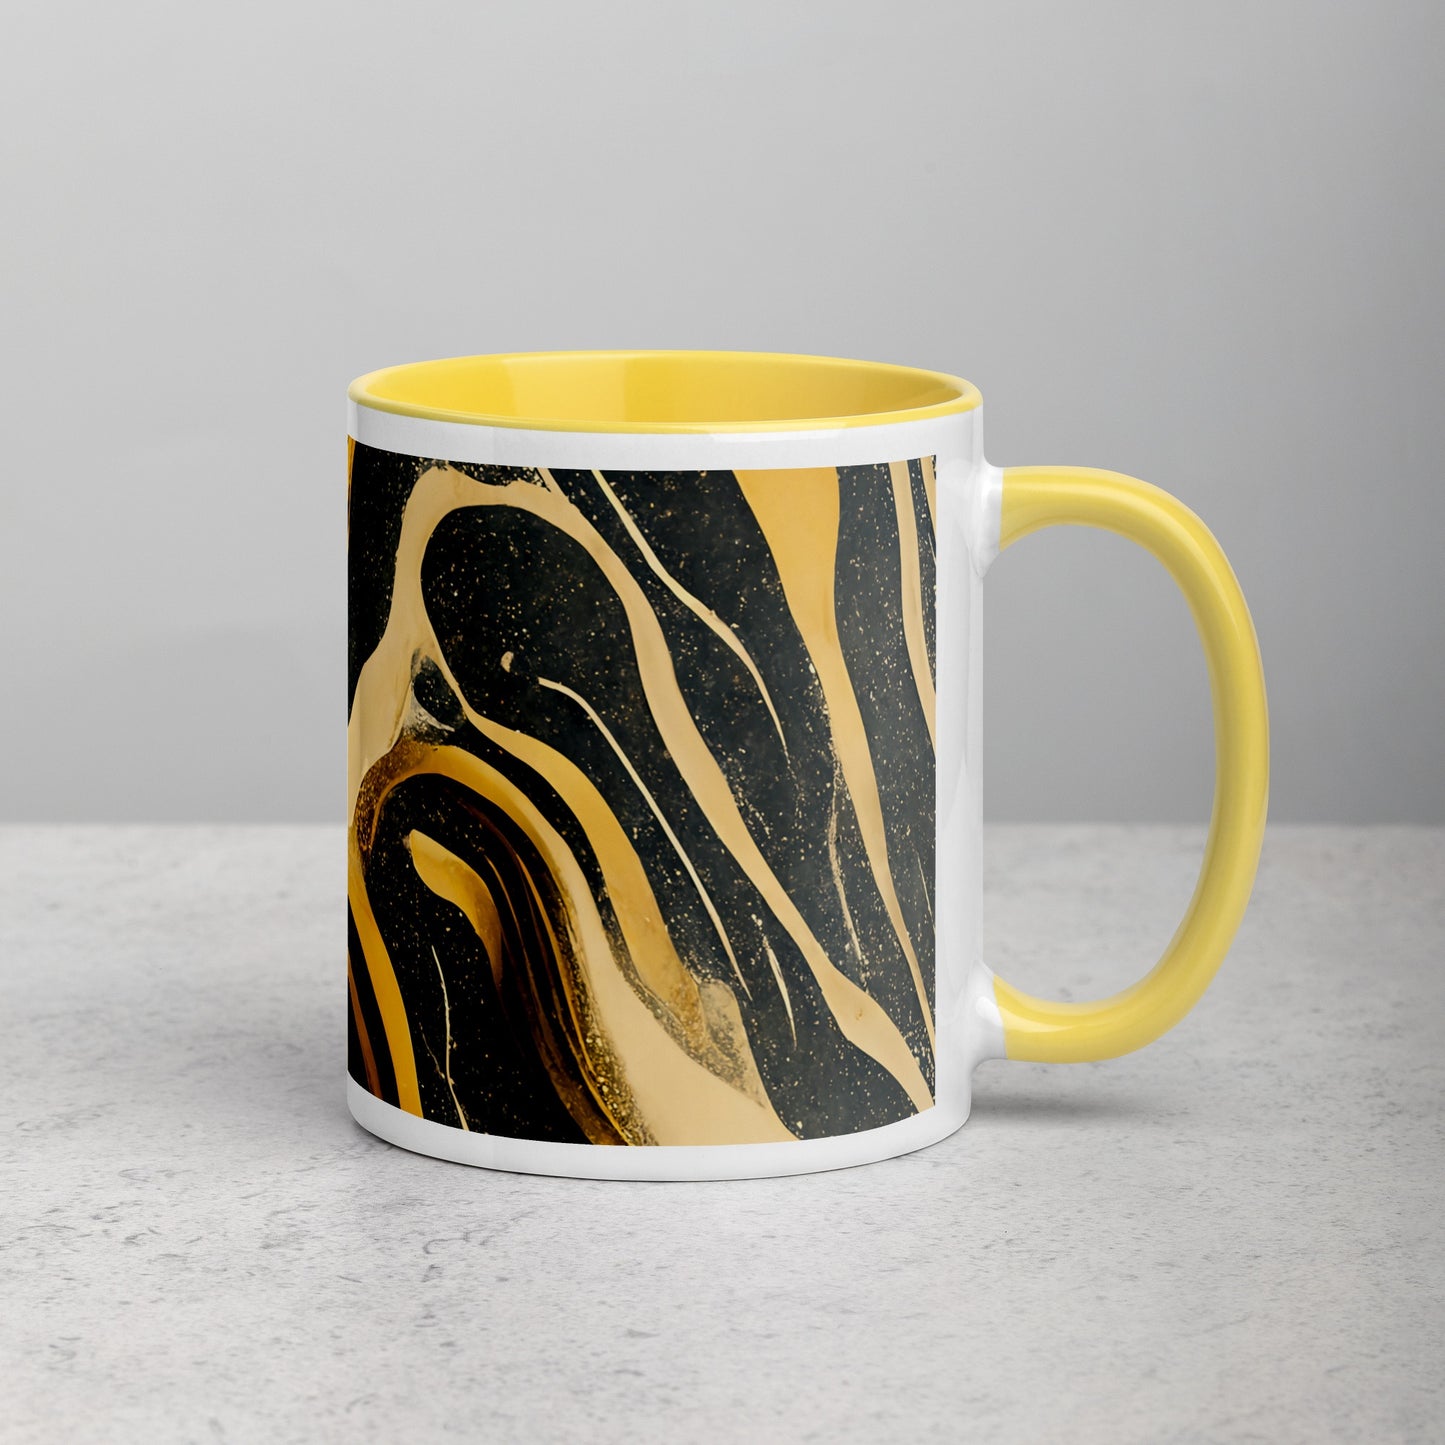 Duna Ceramic Mug with Color Inside